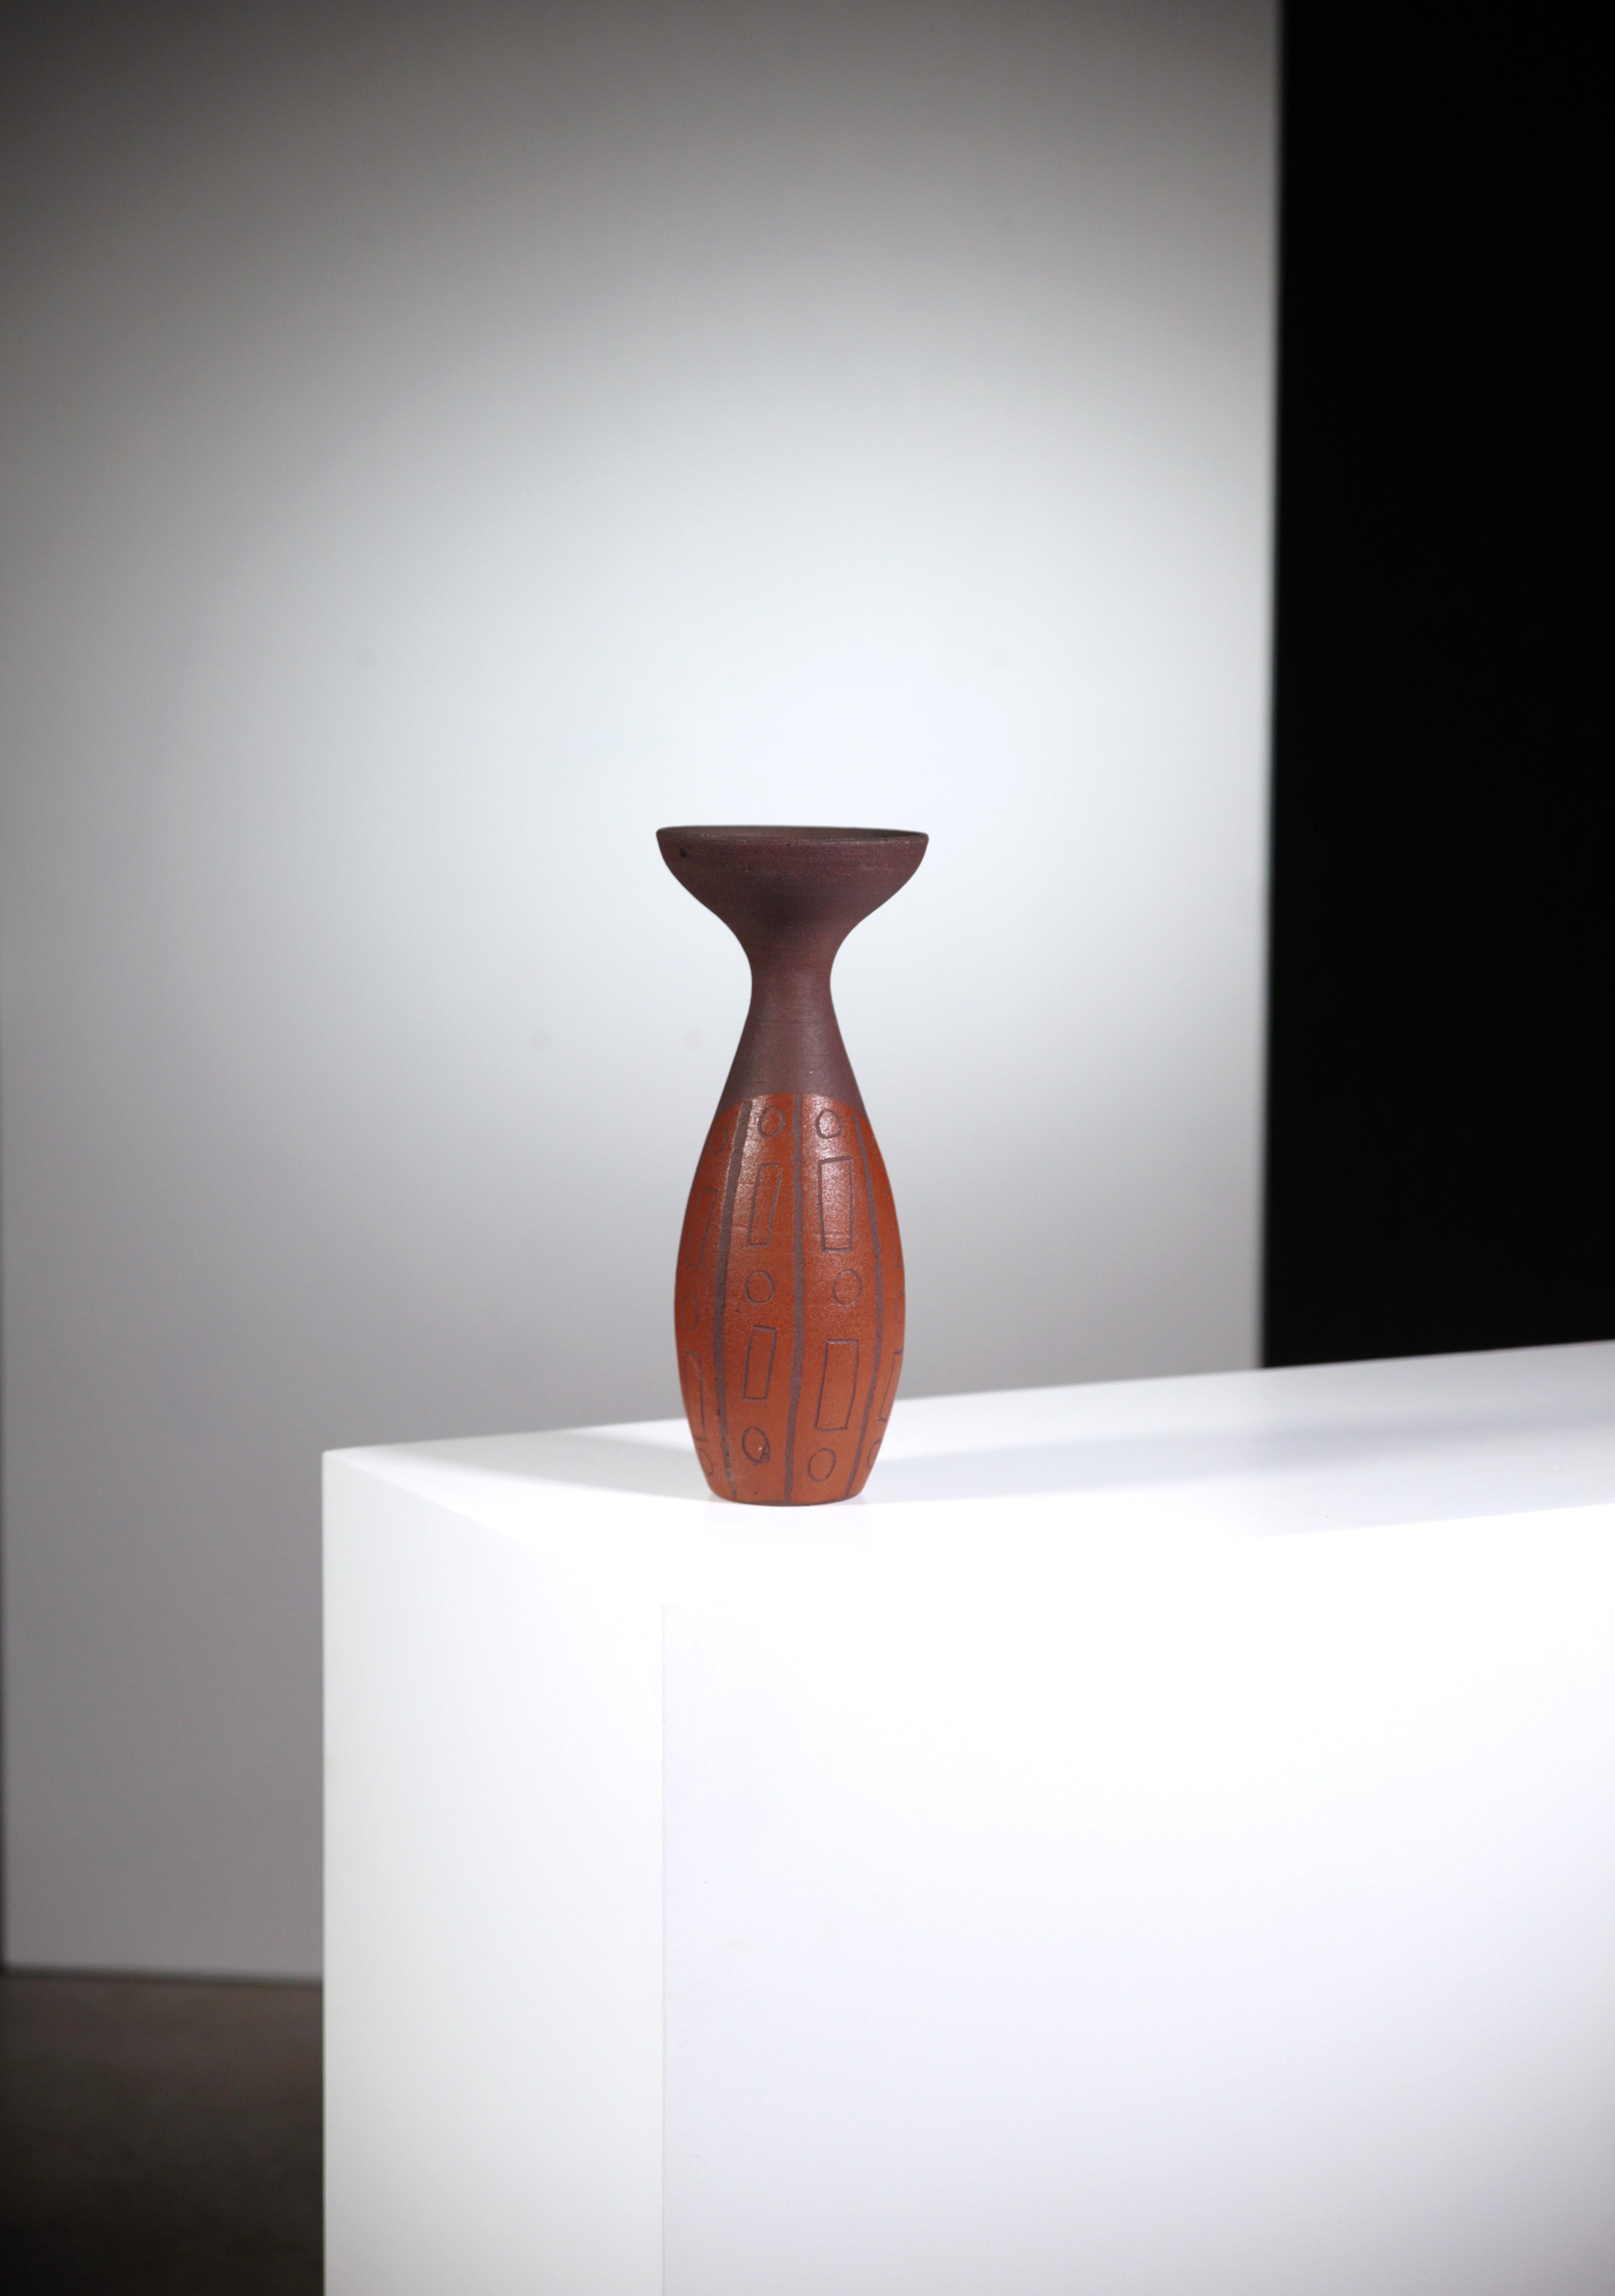 Eine afrikanistische Vase von Accolay Pottery.

Seltenes Modell.

Unterzeichnet unter.